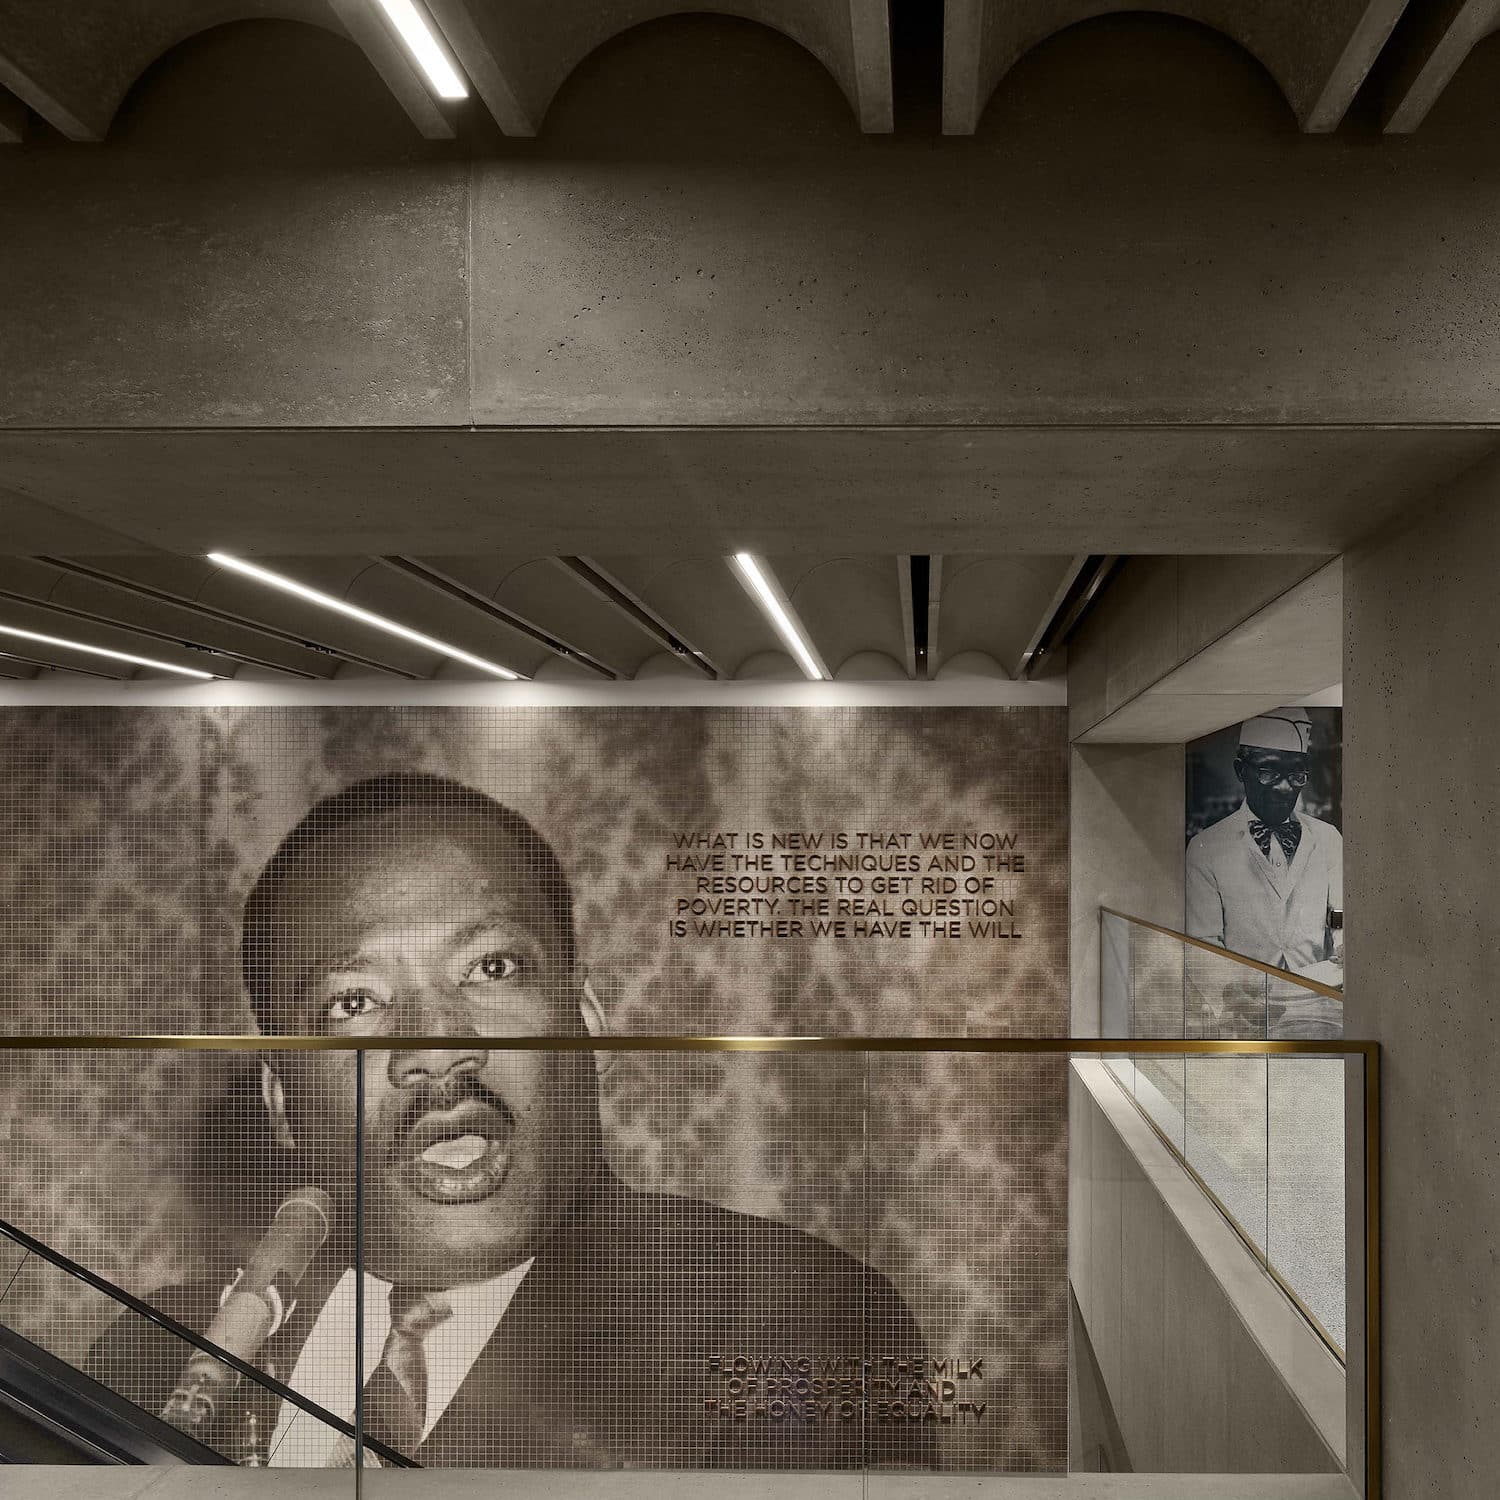 Sozial, divers, nachhaltig: Die Ausstellung „Architecture Now“ im MOMA zeigt zwölf aktuelle Architektur-Projekte in New York. Bild: Dror Baldinger, FAIA